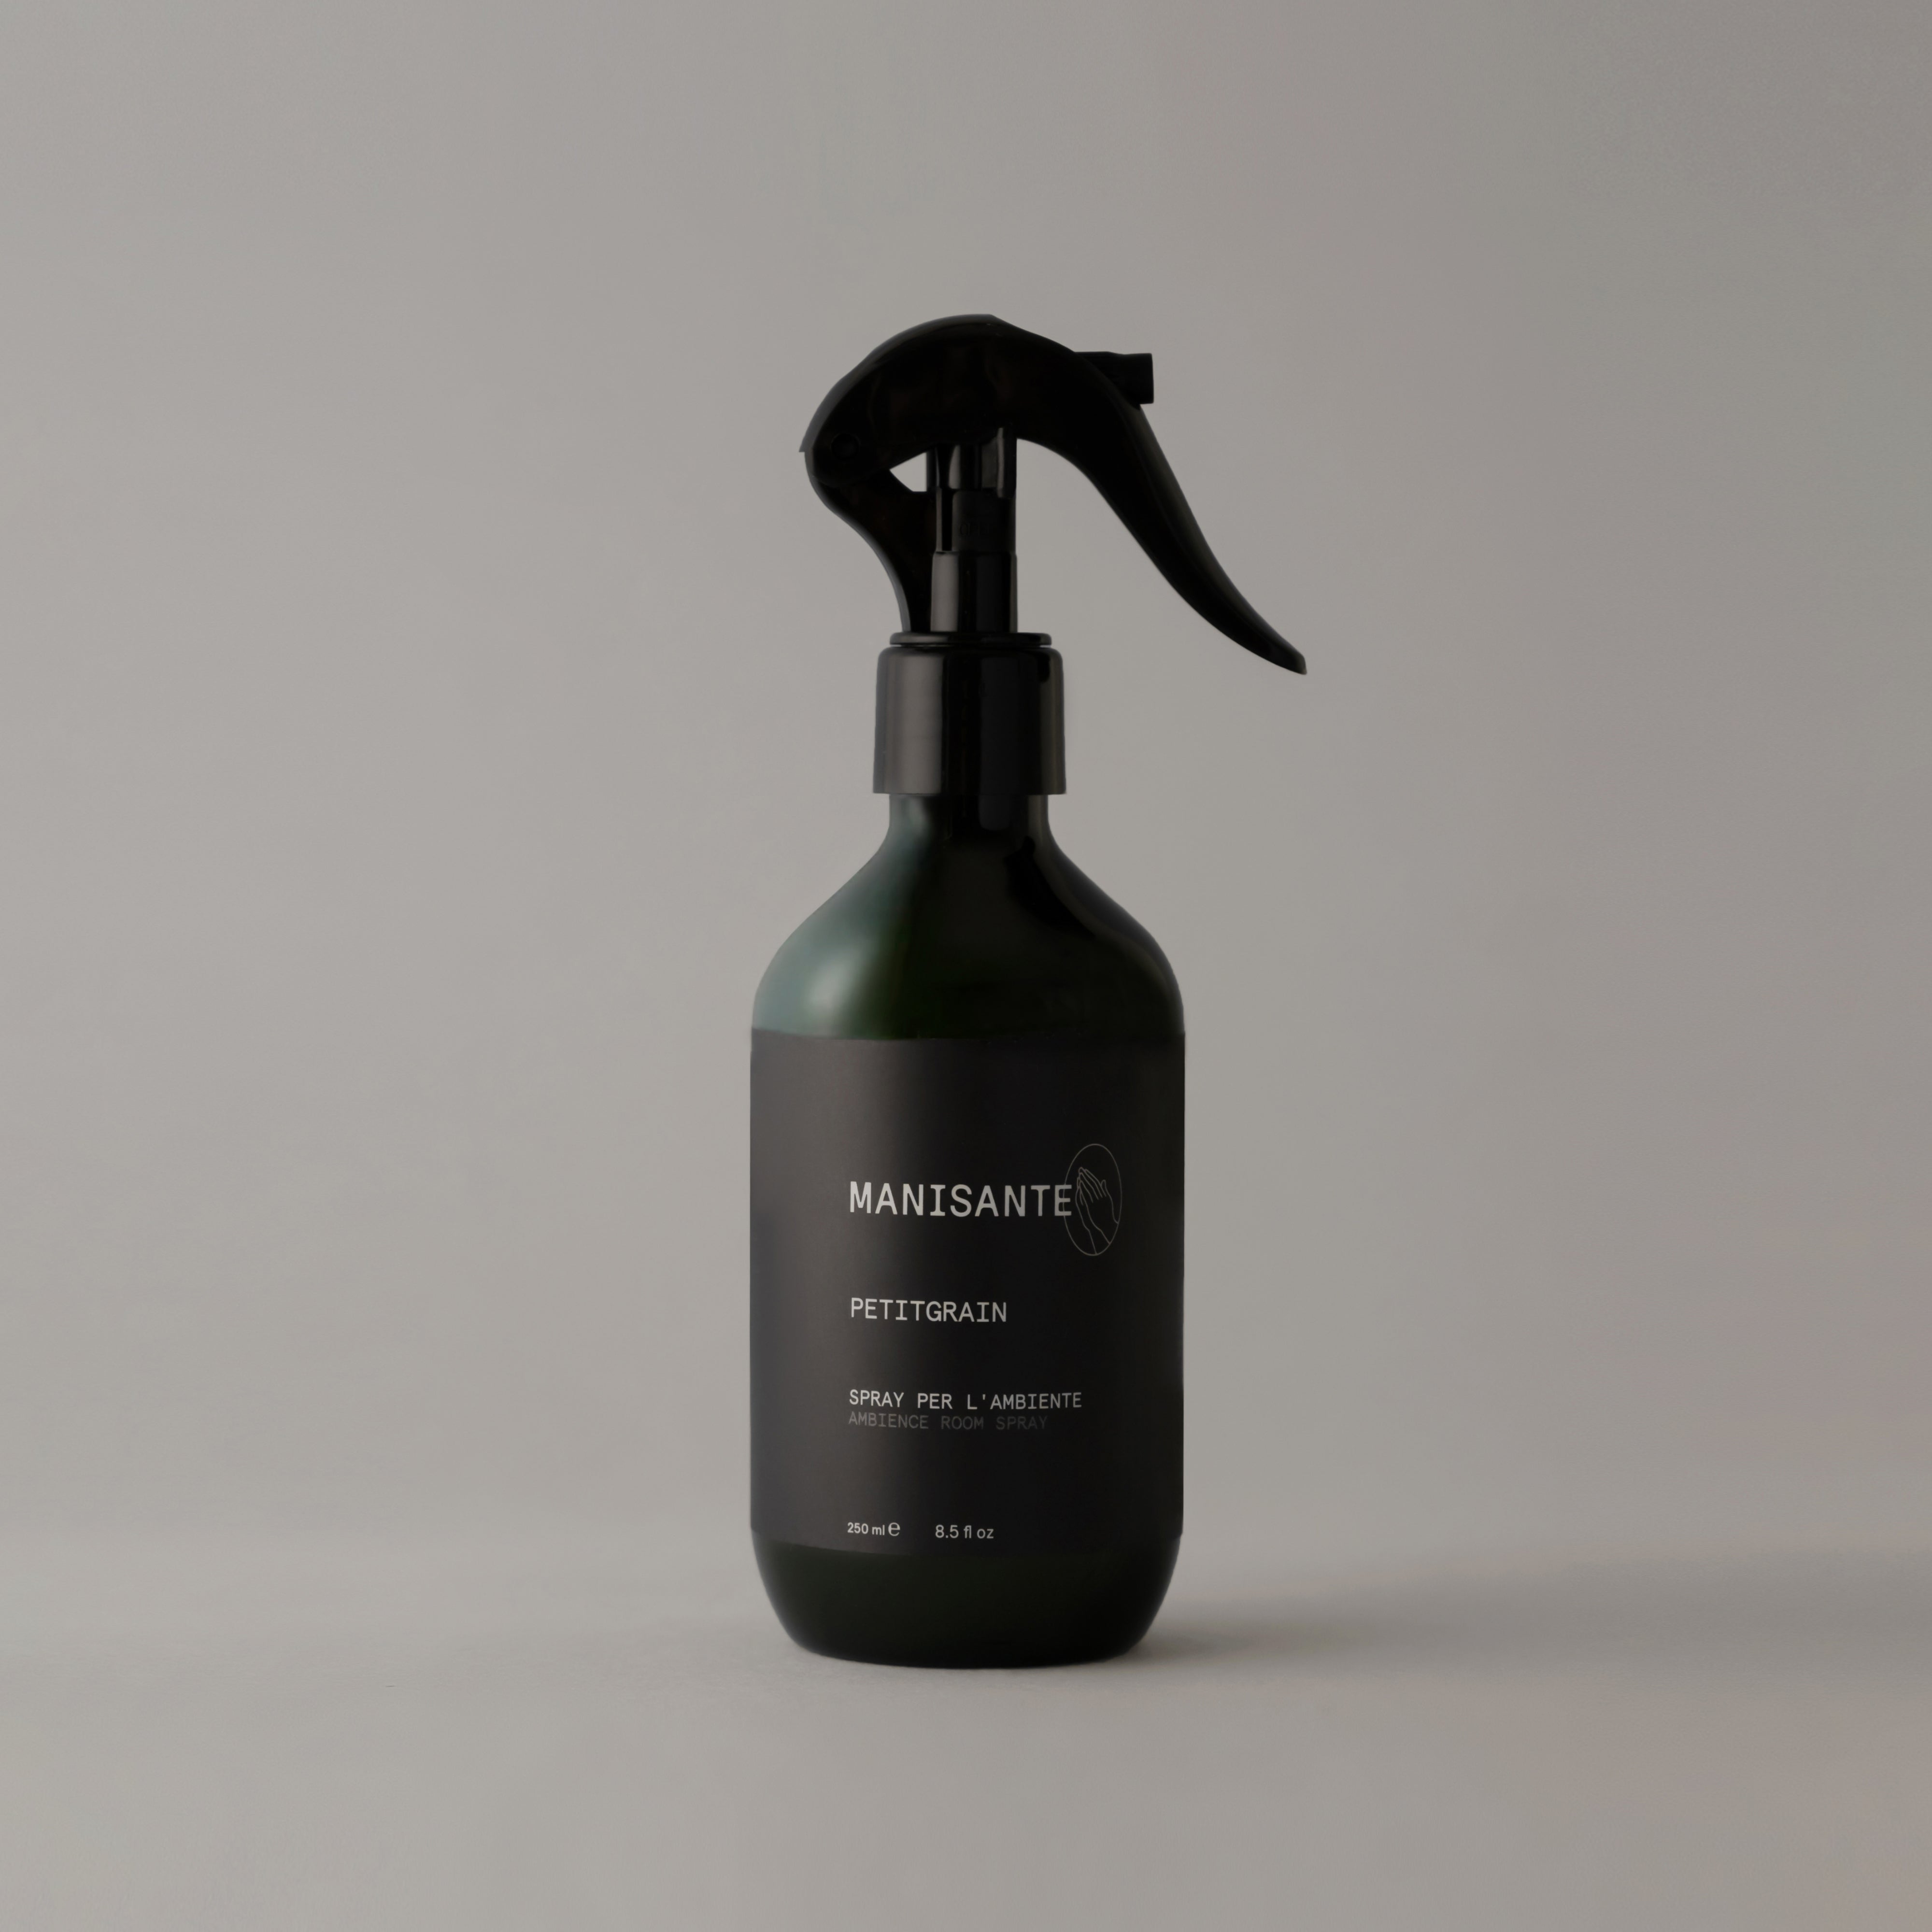 Petitgrain / Ambience room spray